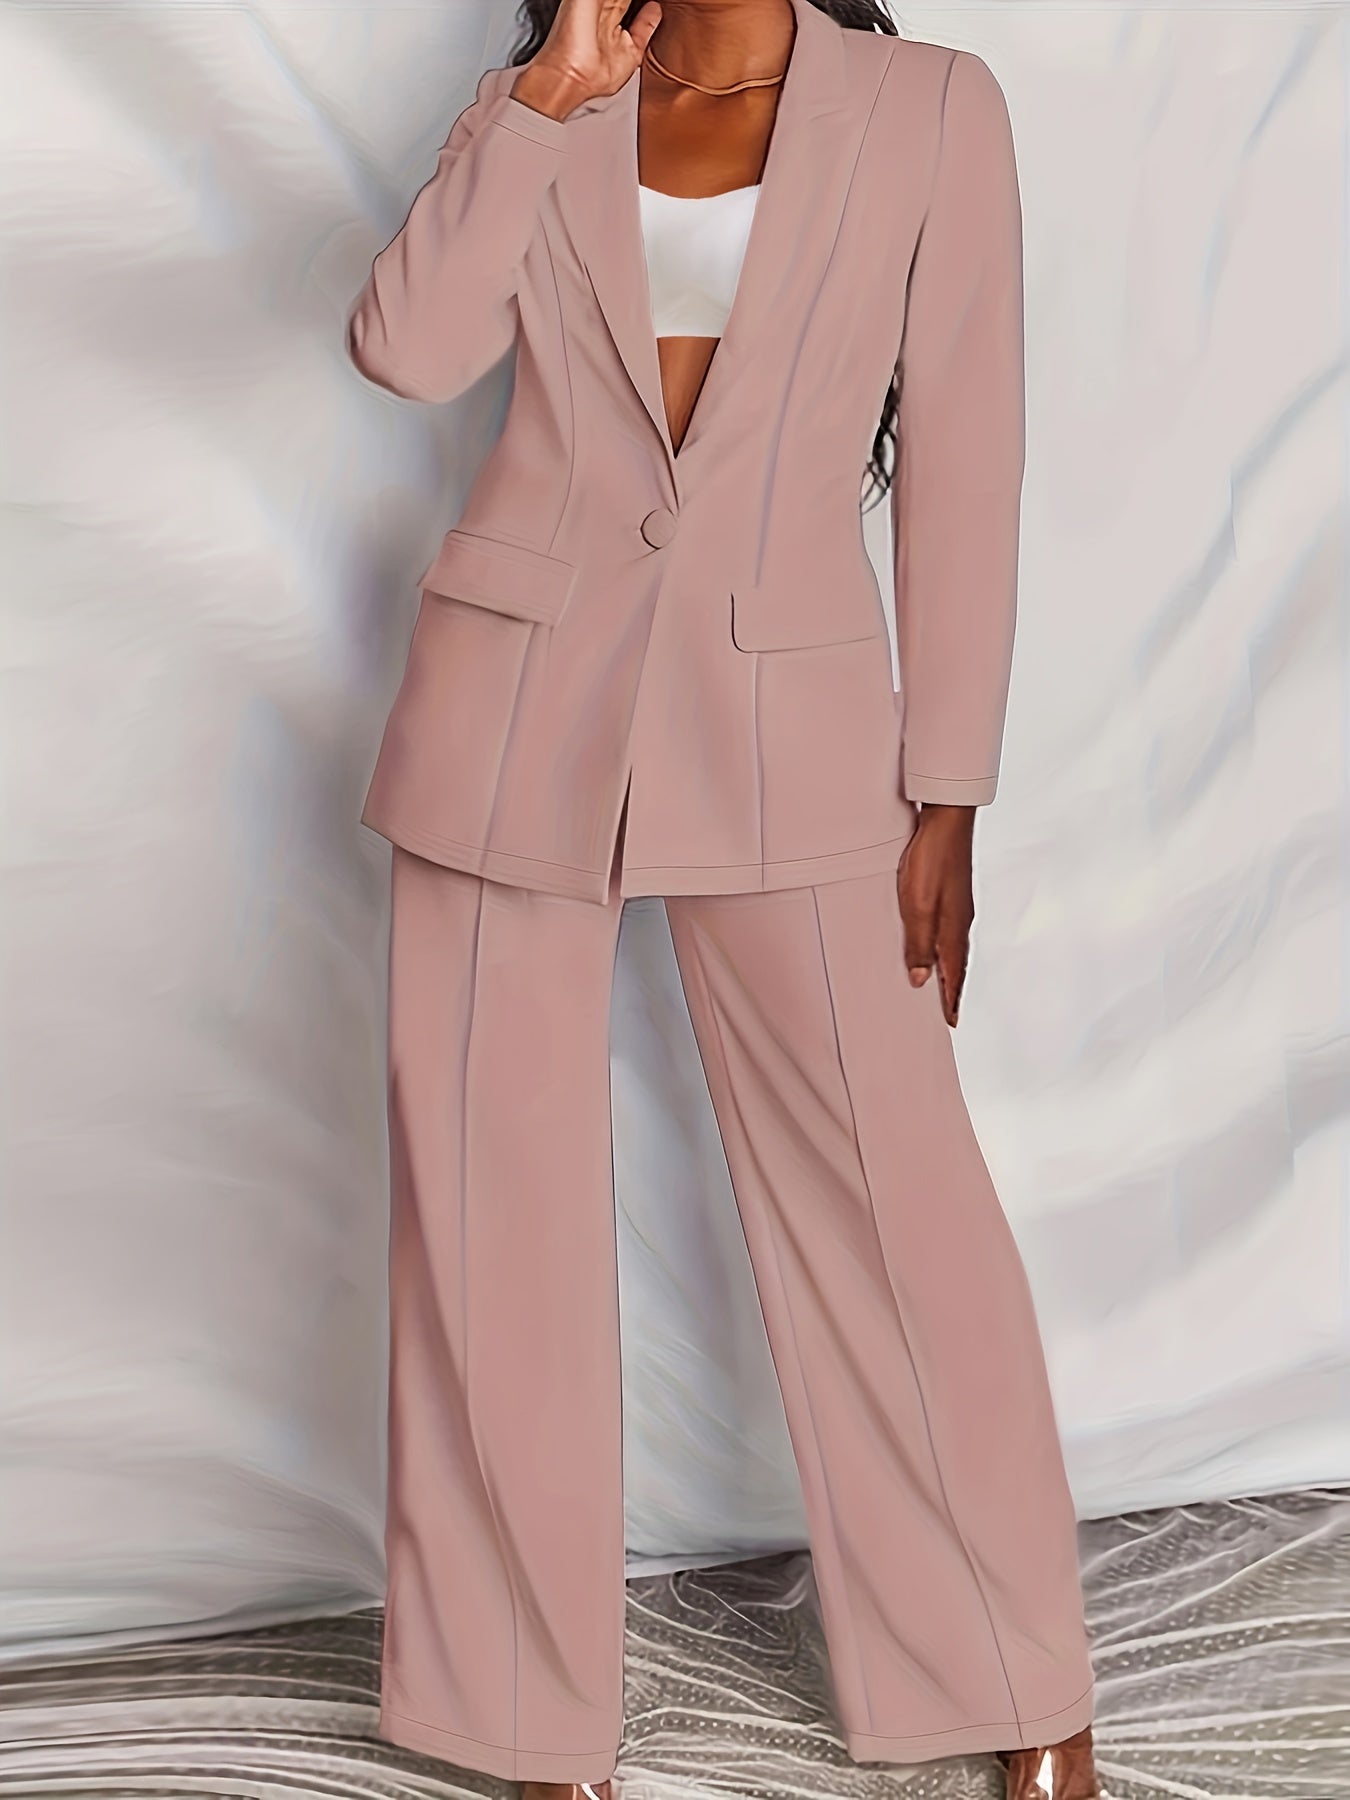 Antmvs Plus Size Casual Suit Set, Women's Plus Solid Long Sleeve Single Breast Button Lapel Collar Suit Coat & Wide Leg Pants Suit Two Piece Set